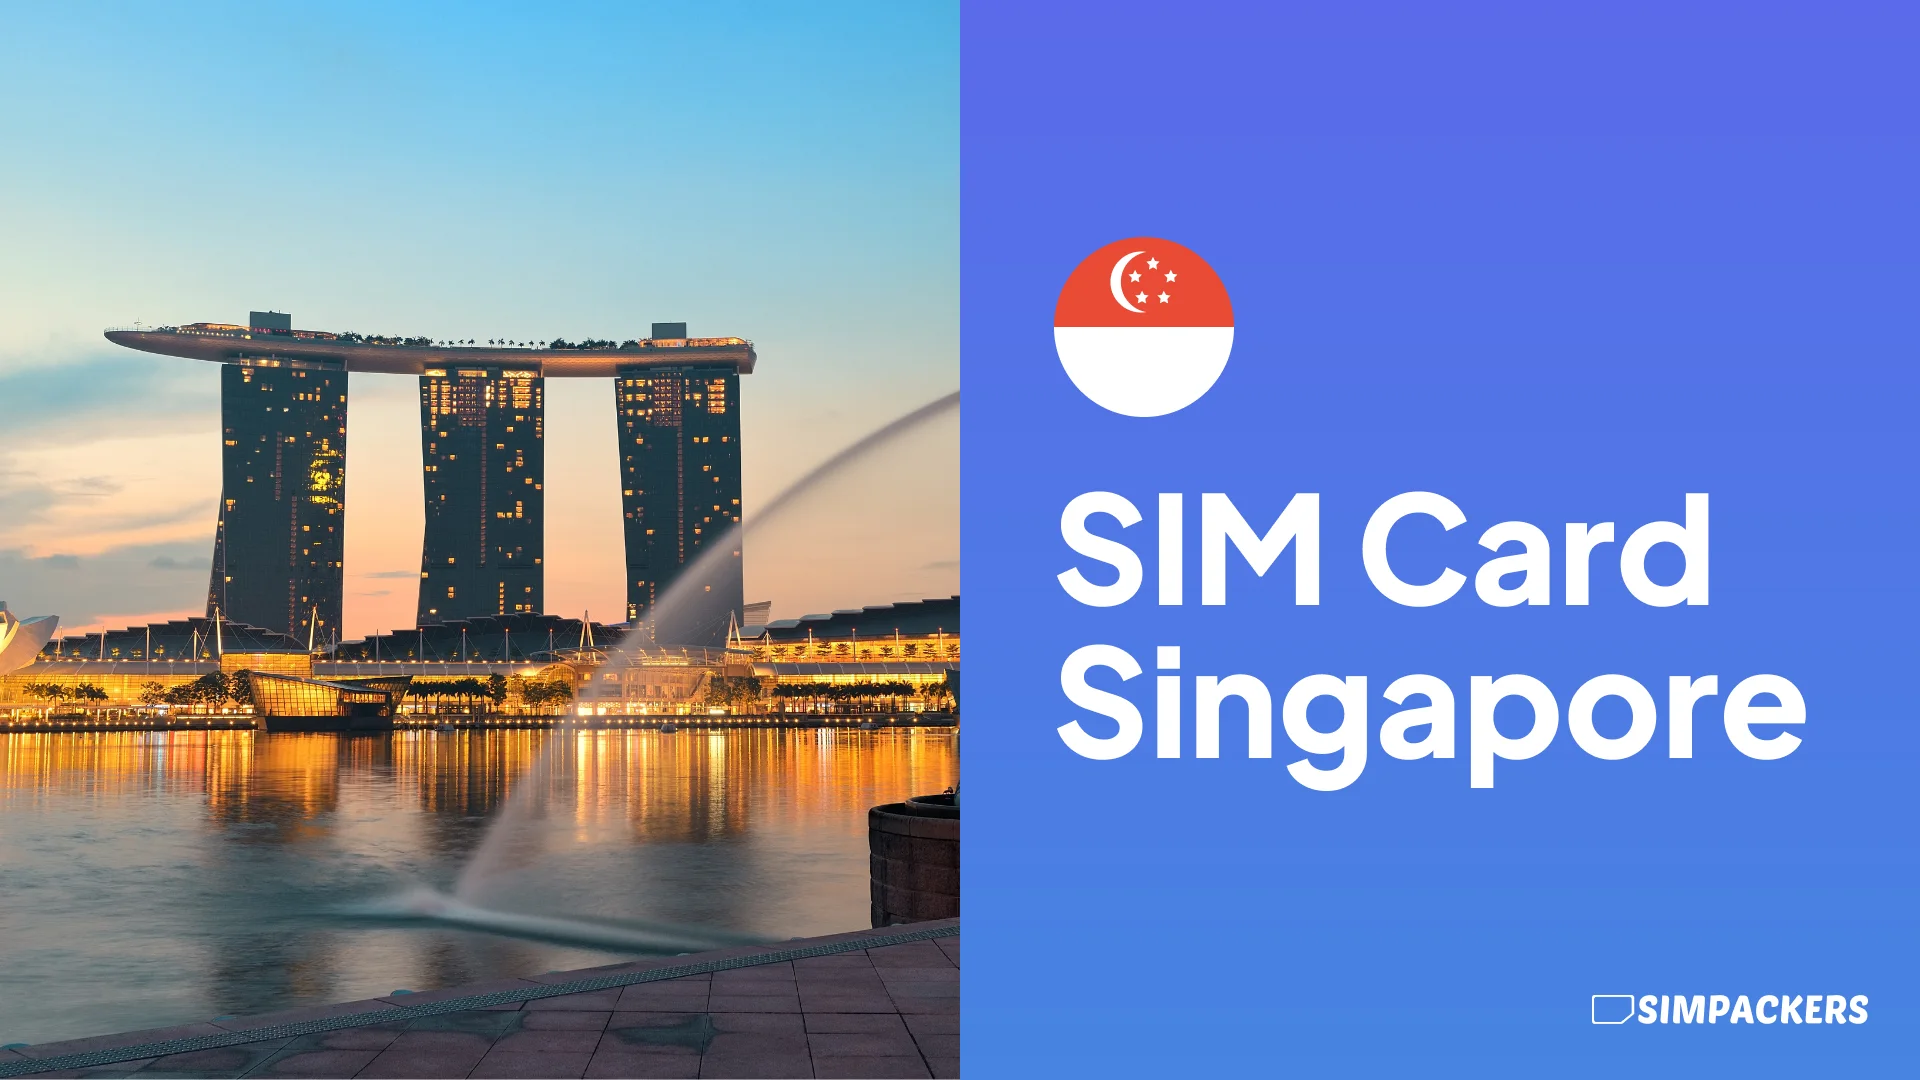 EN/FEATURED_IMAGES/sim-card-singapore.webp